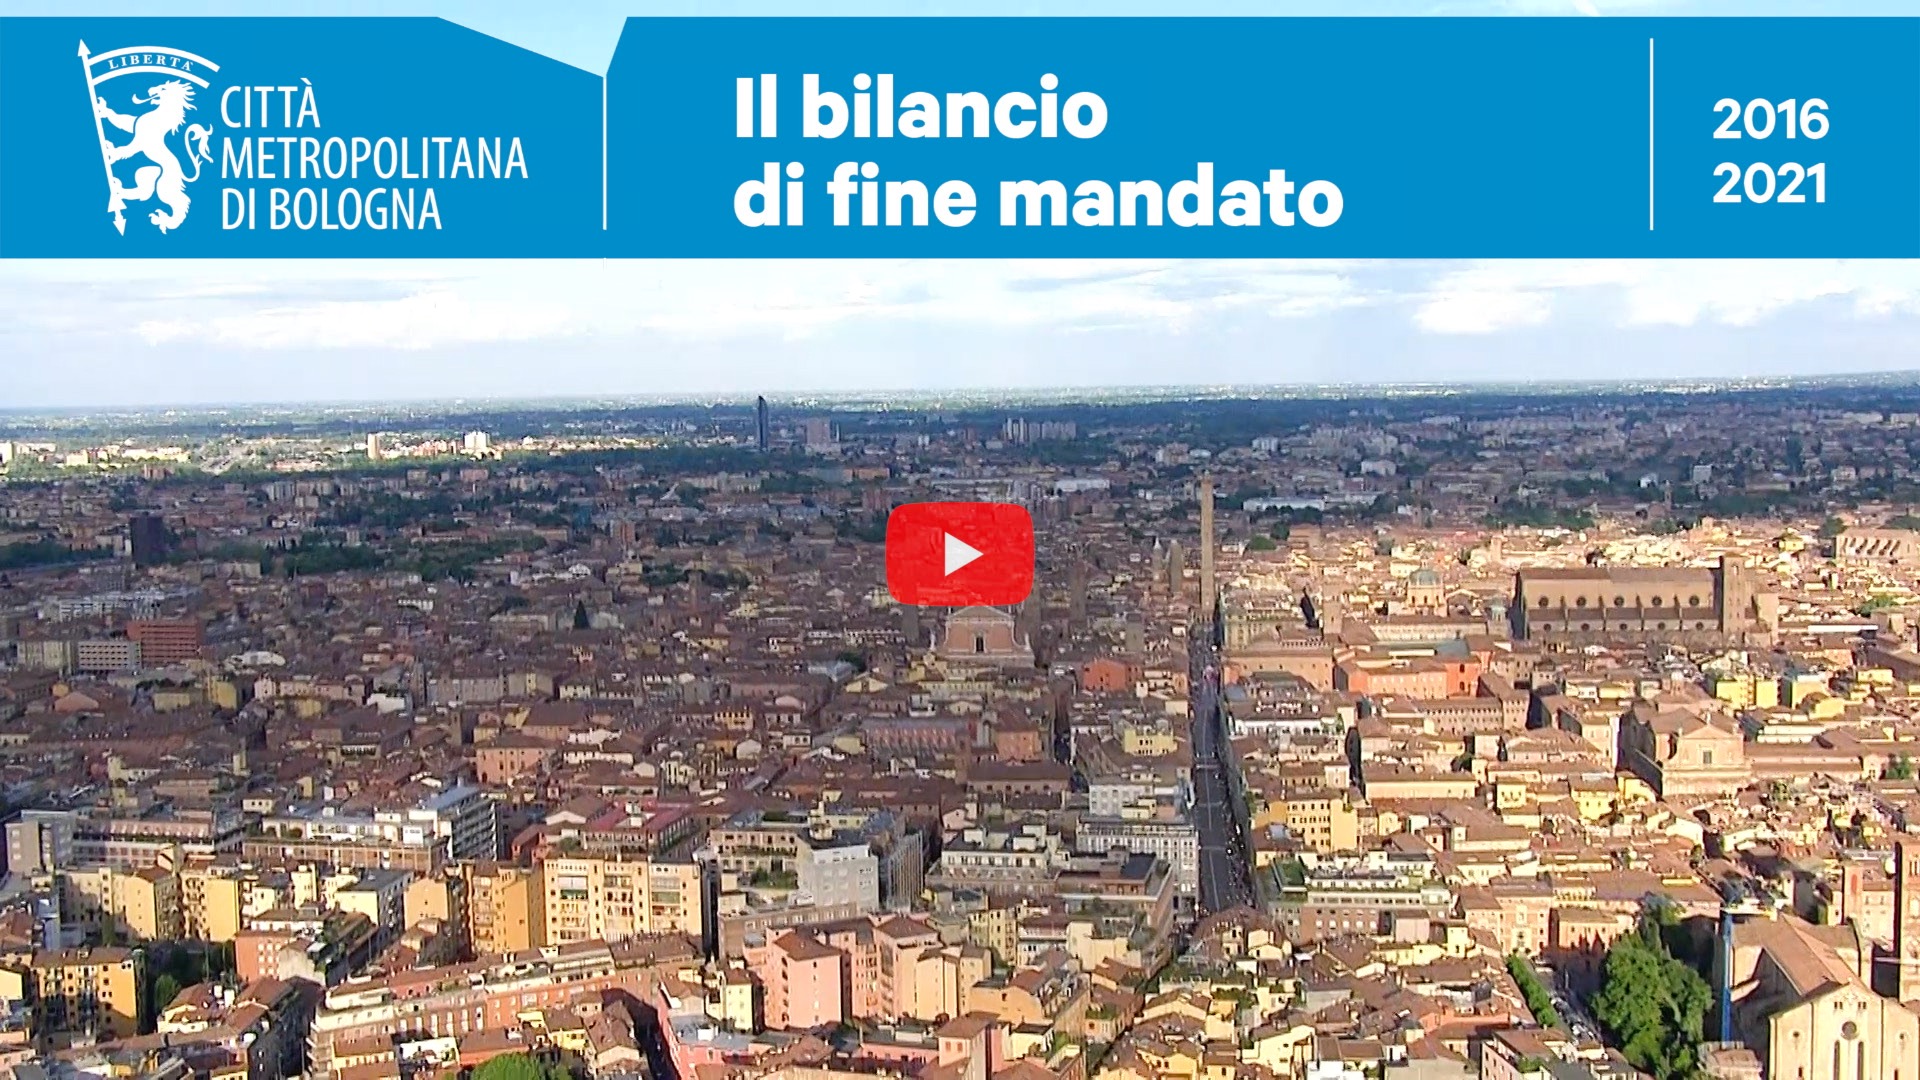 Il Bilancio di fine mandato (2016-2021) della Città metropolitana di Bologna